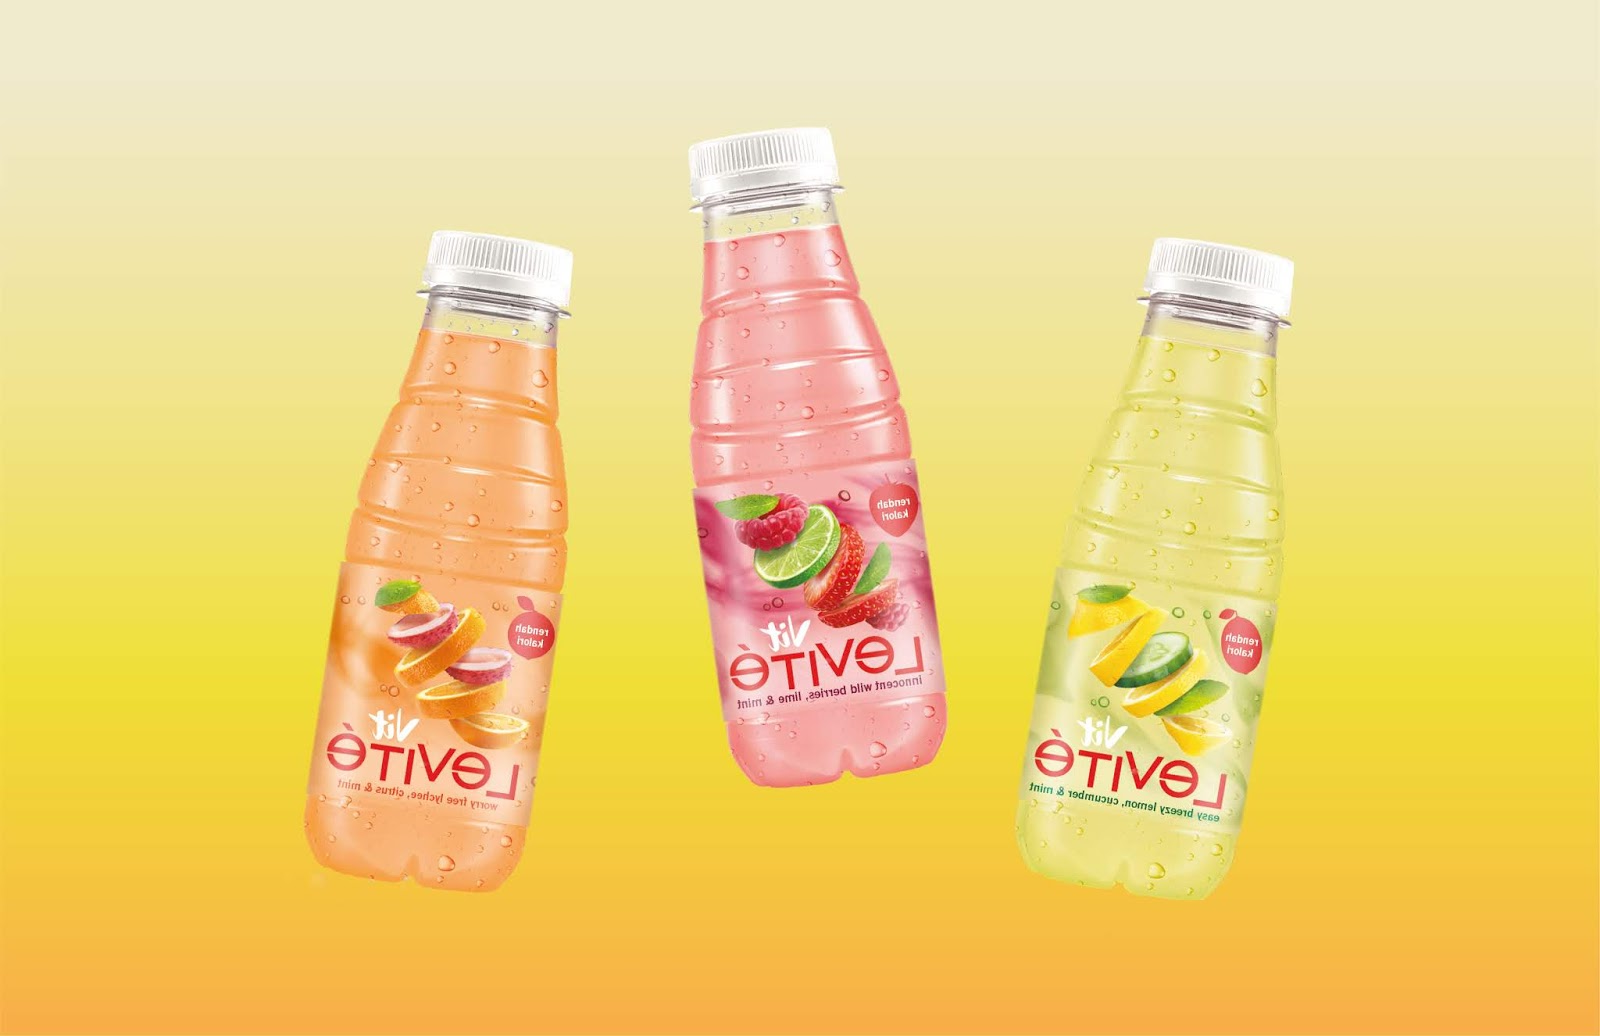 果汁包装设计常常用水果本身照片或插画表达(图4)